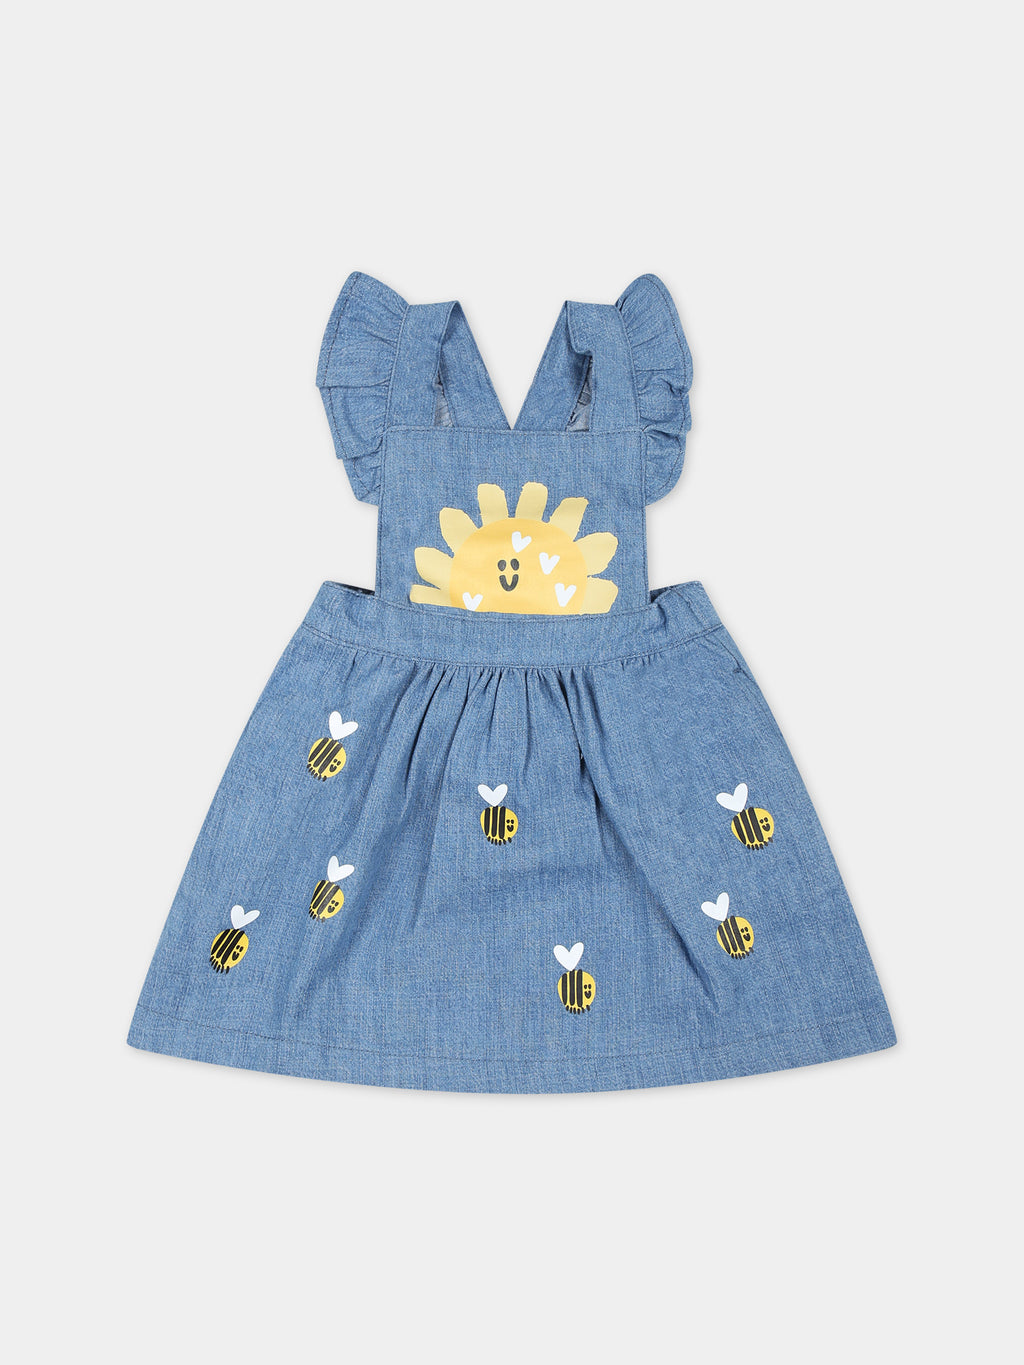 Salopette bleue pour bébé fille avec abeilles